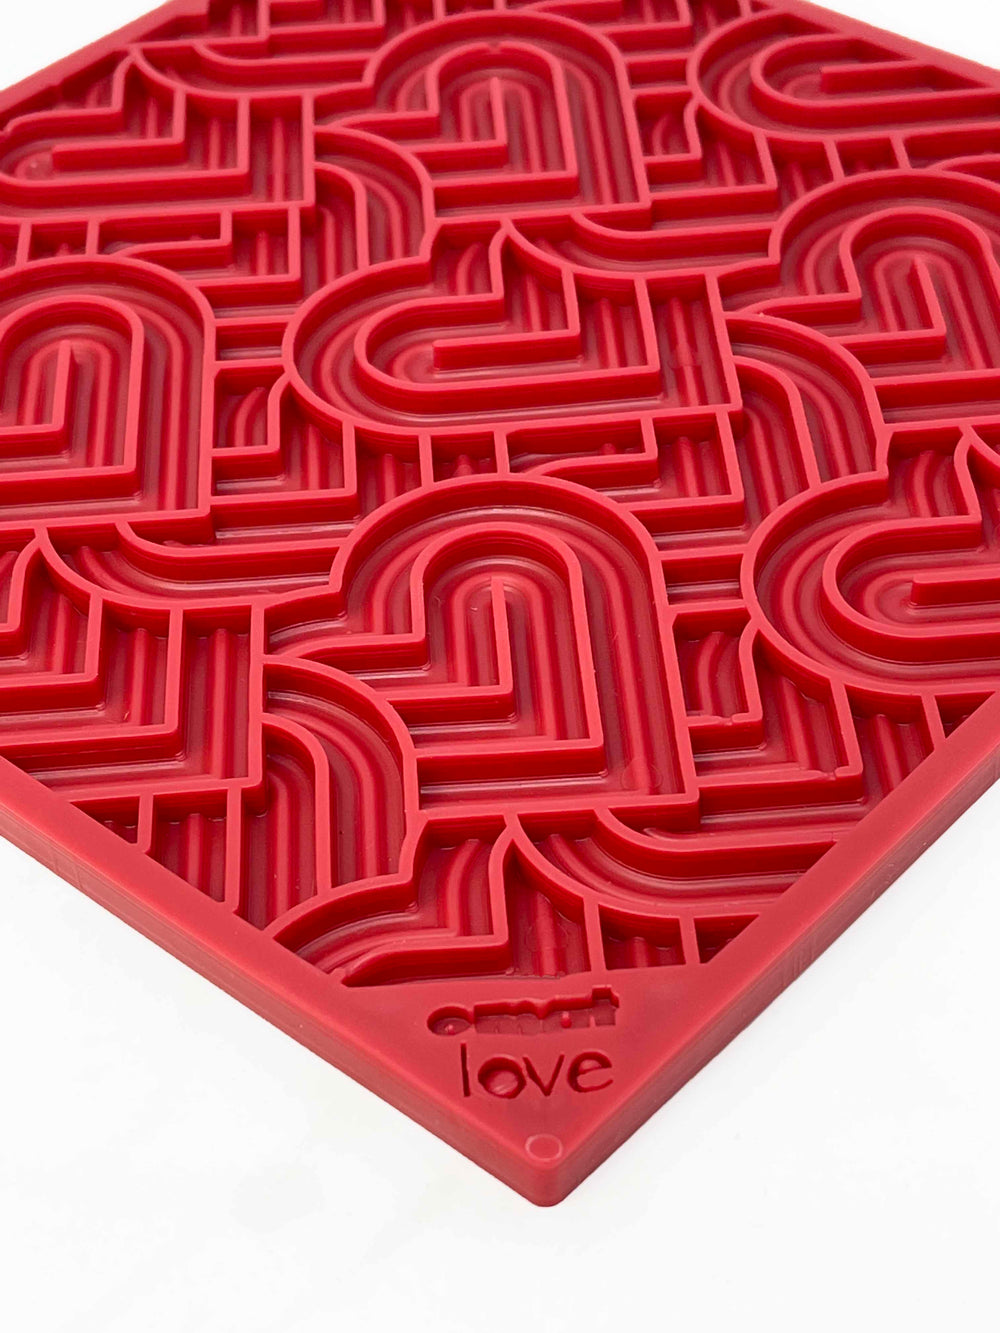 Heart Design "Love" eMat Lick Mat